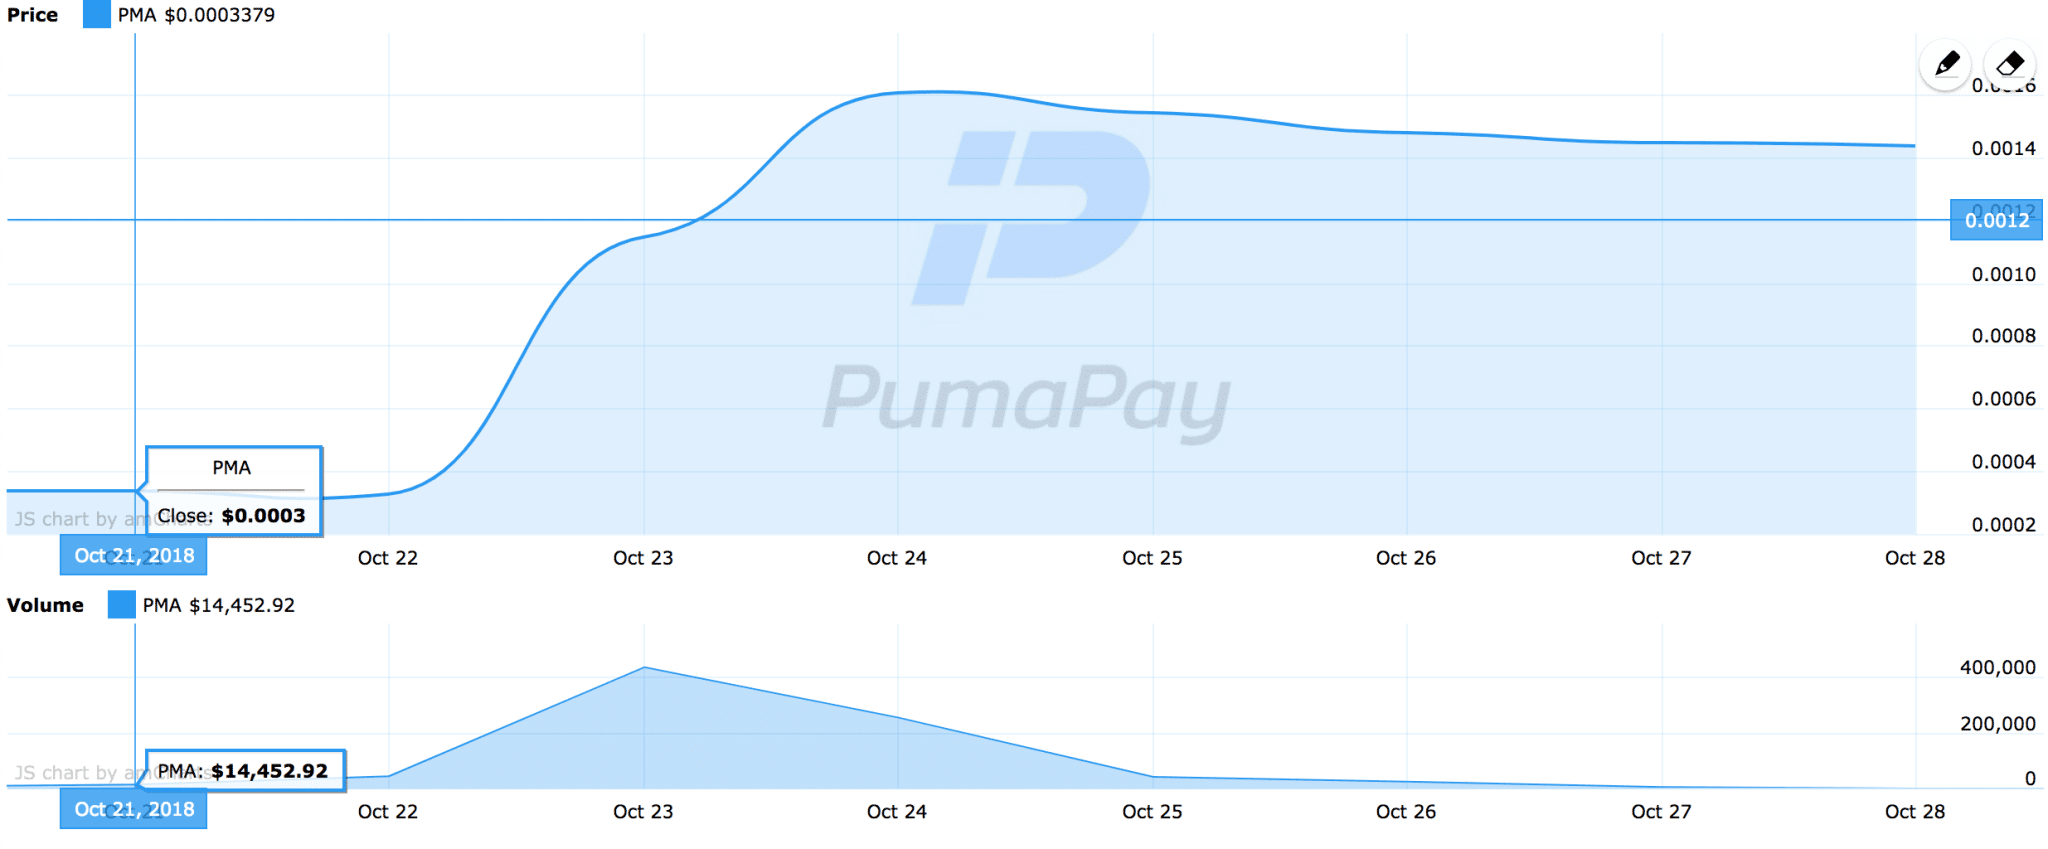 PumaPay Chart 10-28-2018